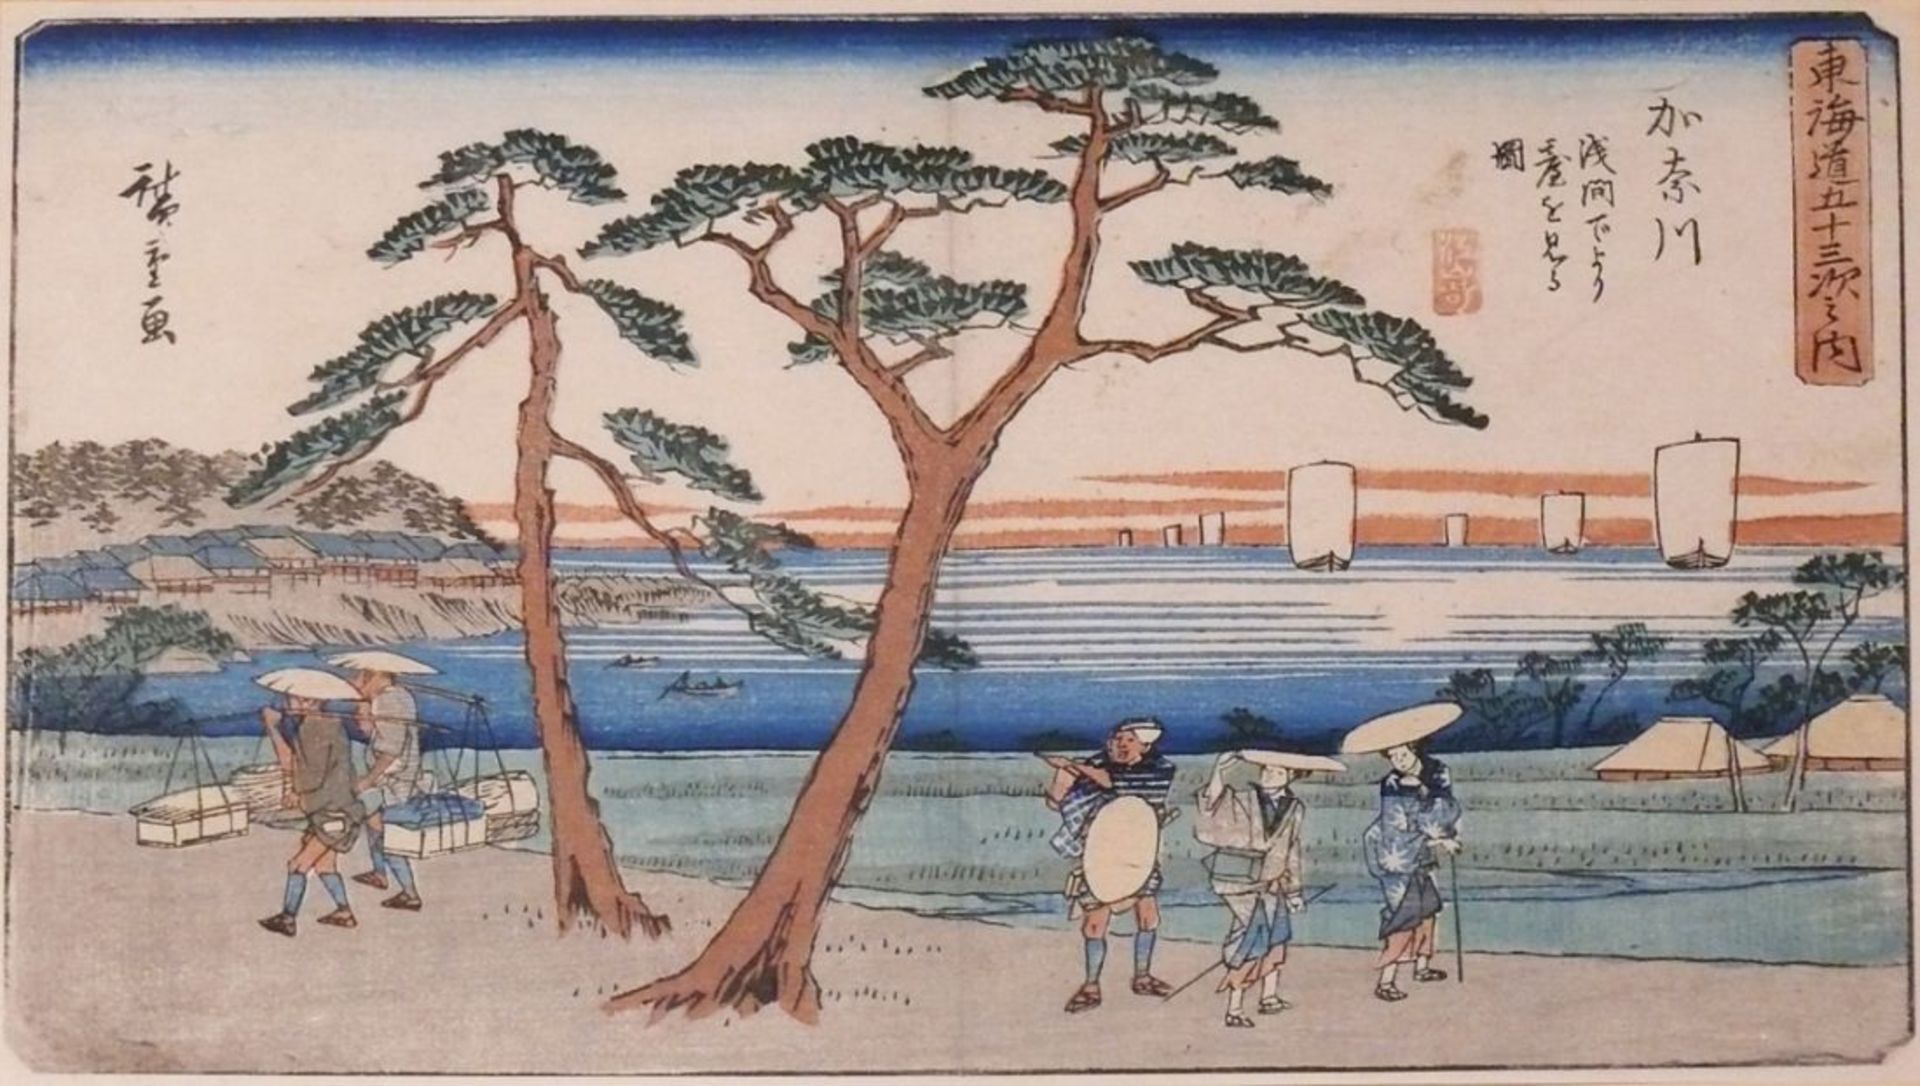 HIROSHIGE, Ando (1797 - 1858) "Tokaido